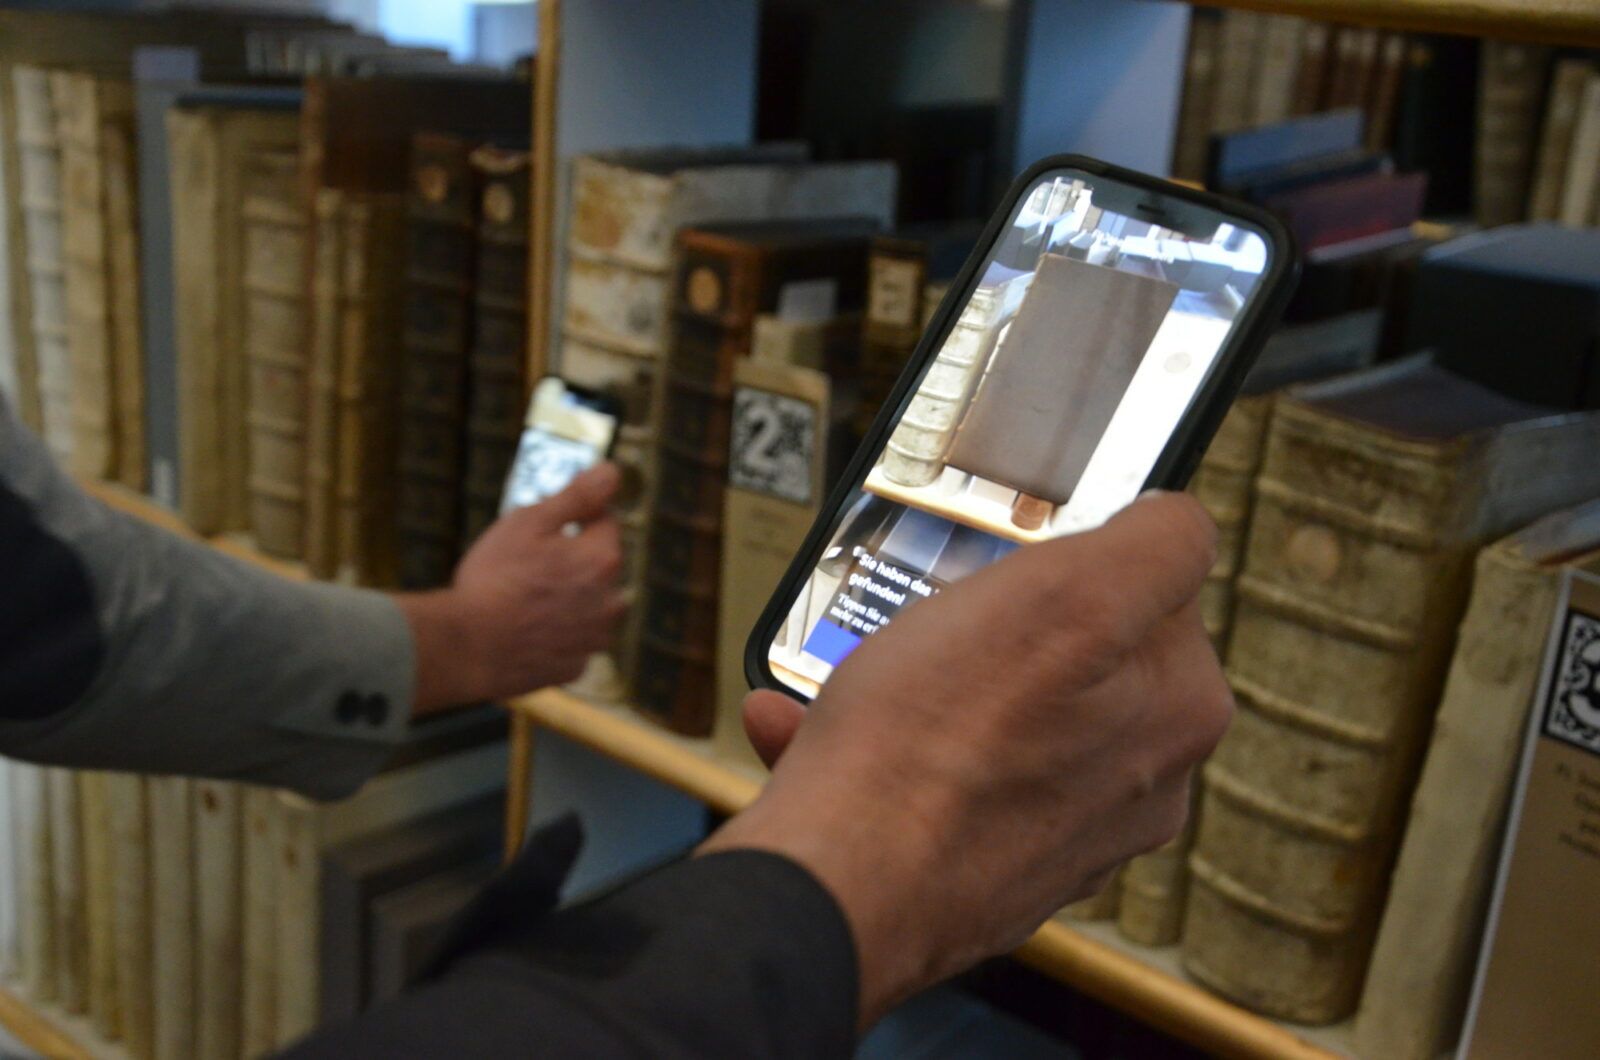 Zwei Hände mit Smartphone, auf dem Display rechts ist ein Buch als 3D-Objekt zu sehen, auf dem Display links ist ein AR-Marker (unscharf) zu erkennen